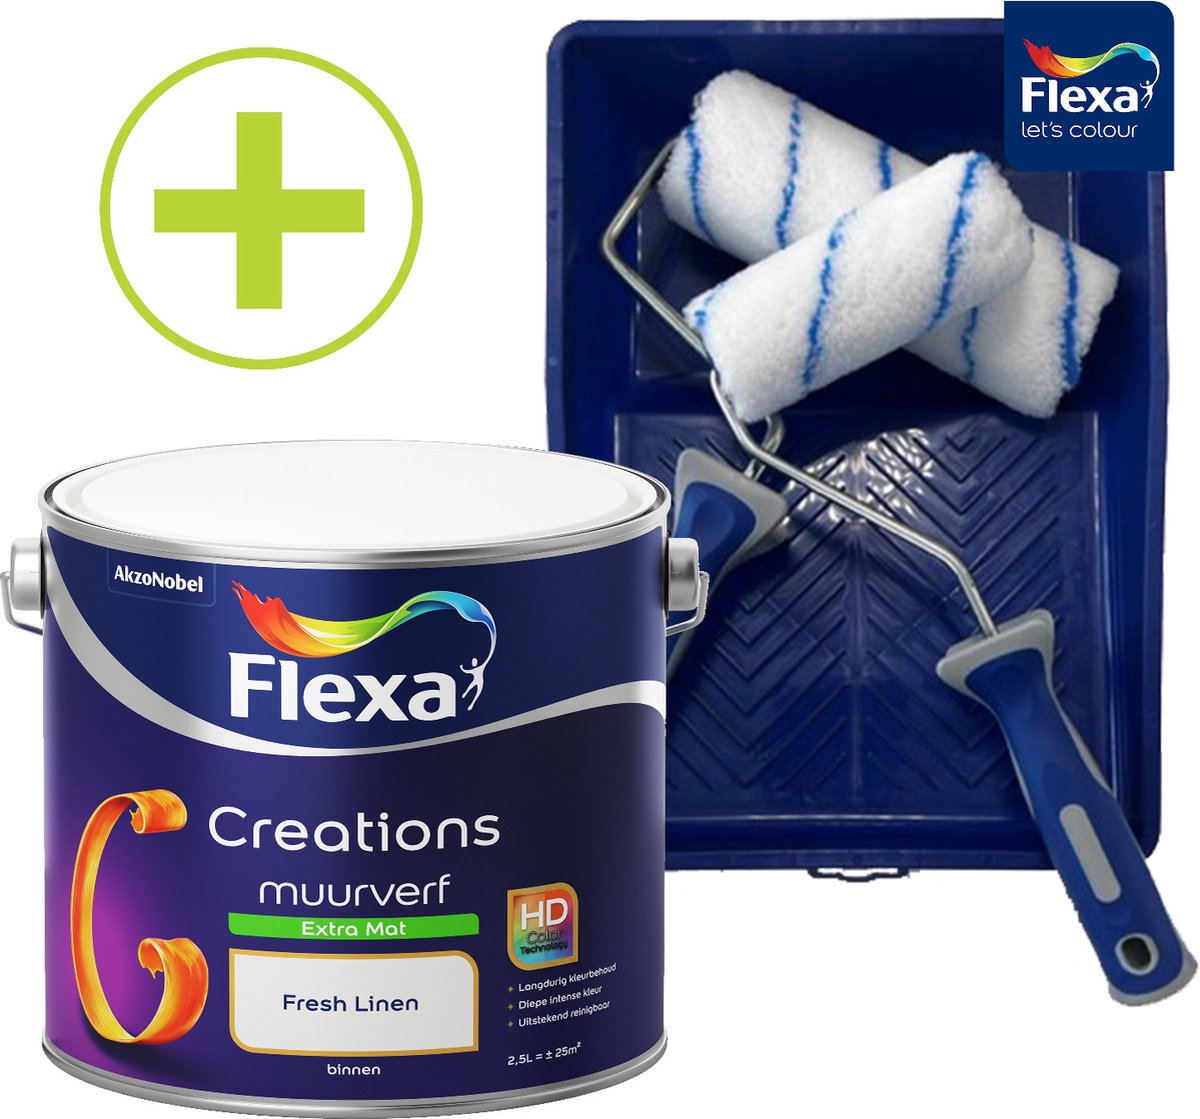 Flexa Creations Muurverf - Extra Mat - Fresh Linen - 2,5 liter + Flexa Muurverfset 5-delig